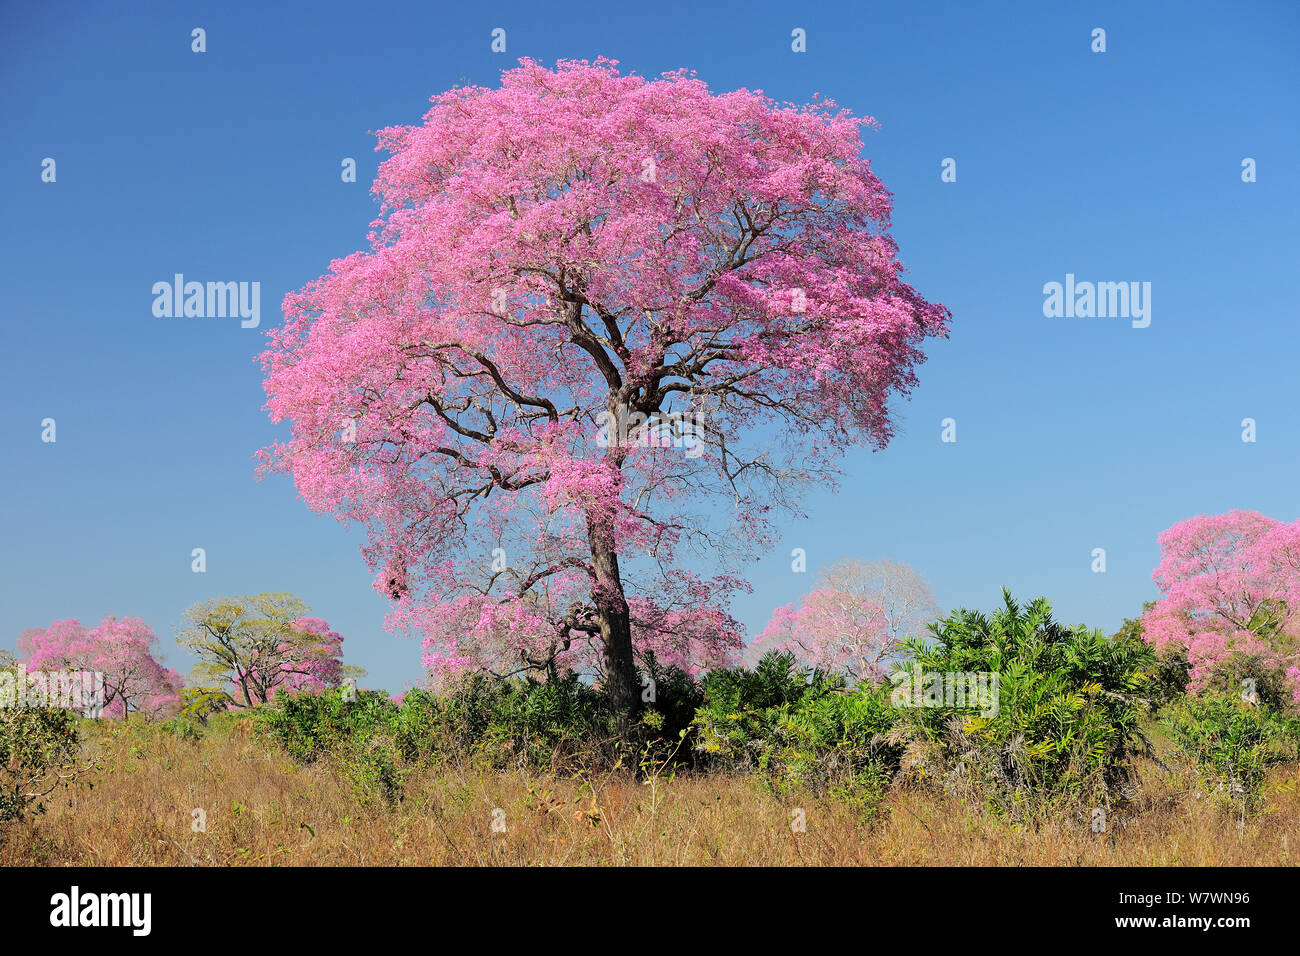 Rosa Ipe tree (Tabebuia ipe / Handroanthus impetiginosus) in fiore, Pantanal, Mato Grosso Membro, Brasile occidentale. Foto Stock